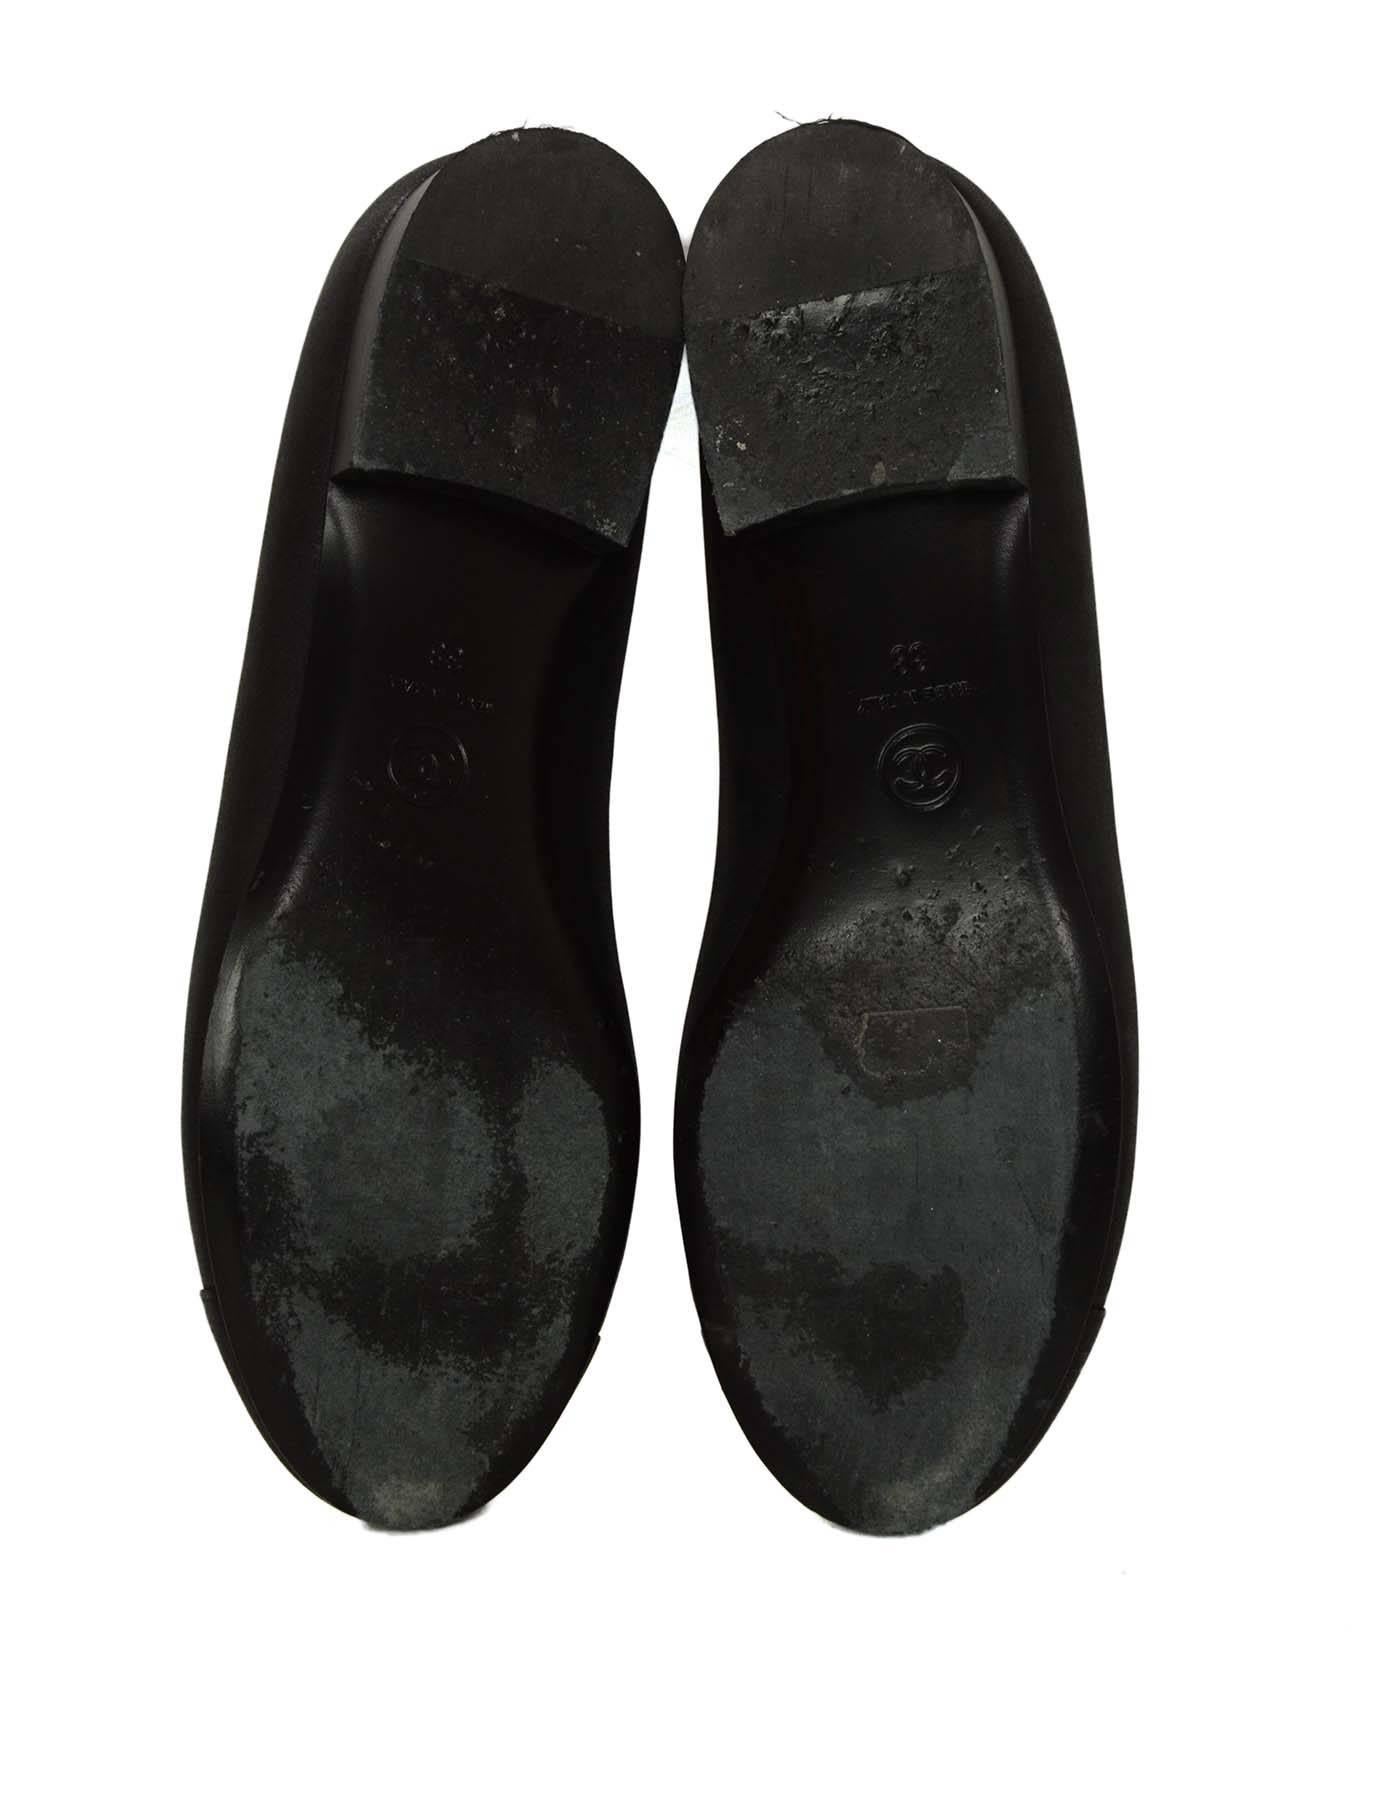 Chanel Black Iridescent Calfskin Flats sz 38 3